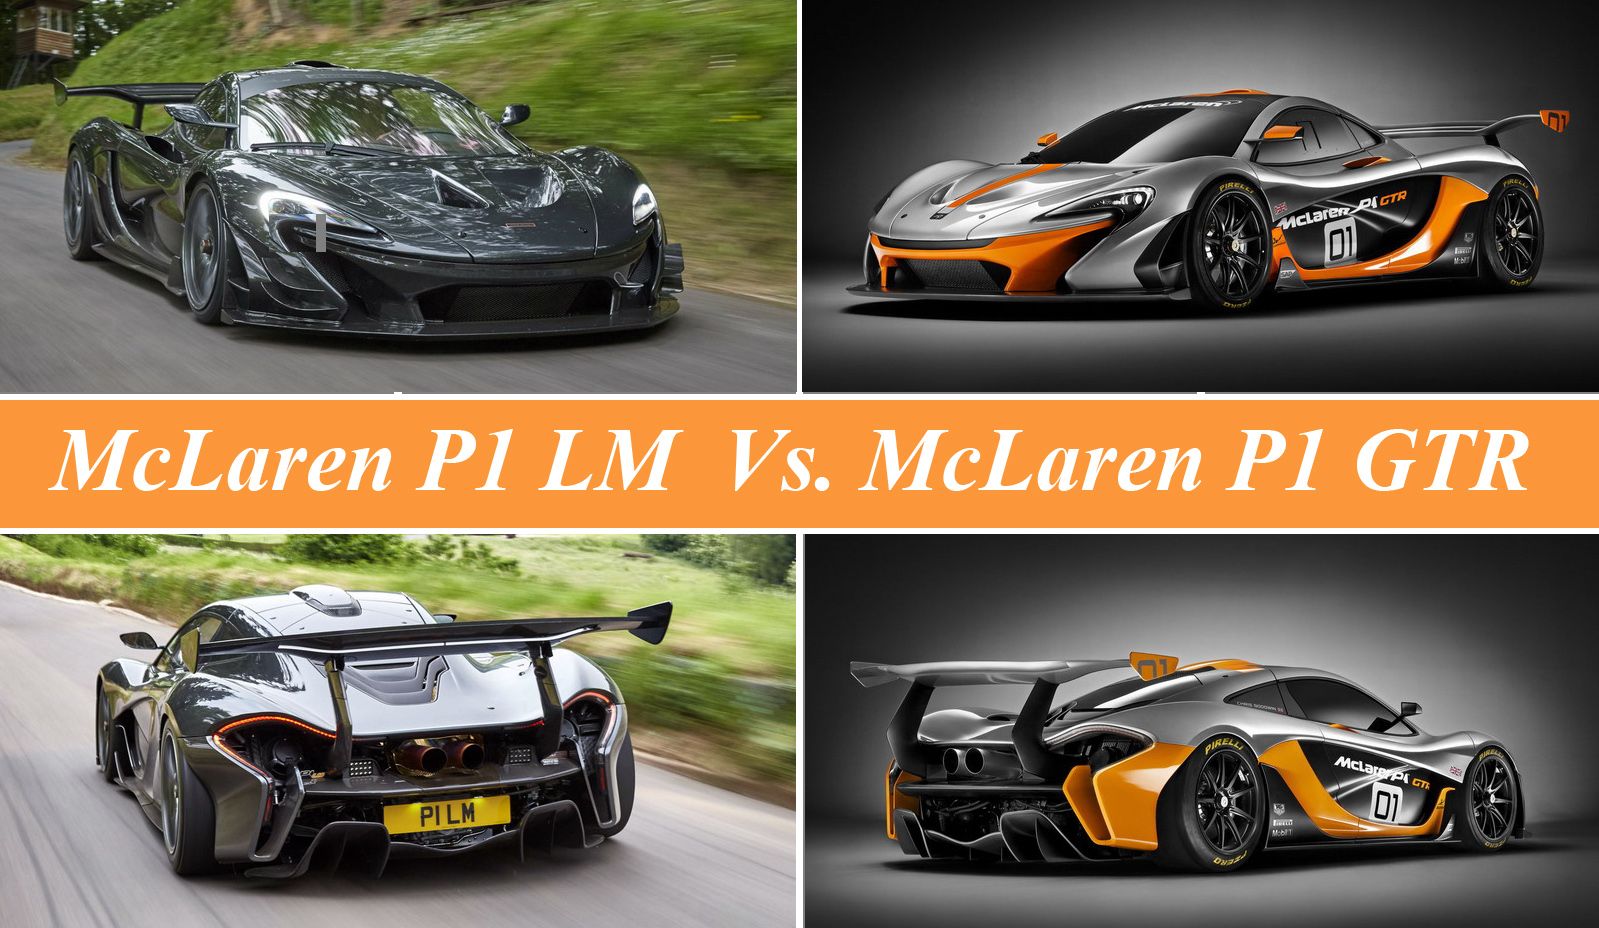 2017 McLaren P1 LM